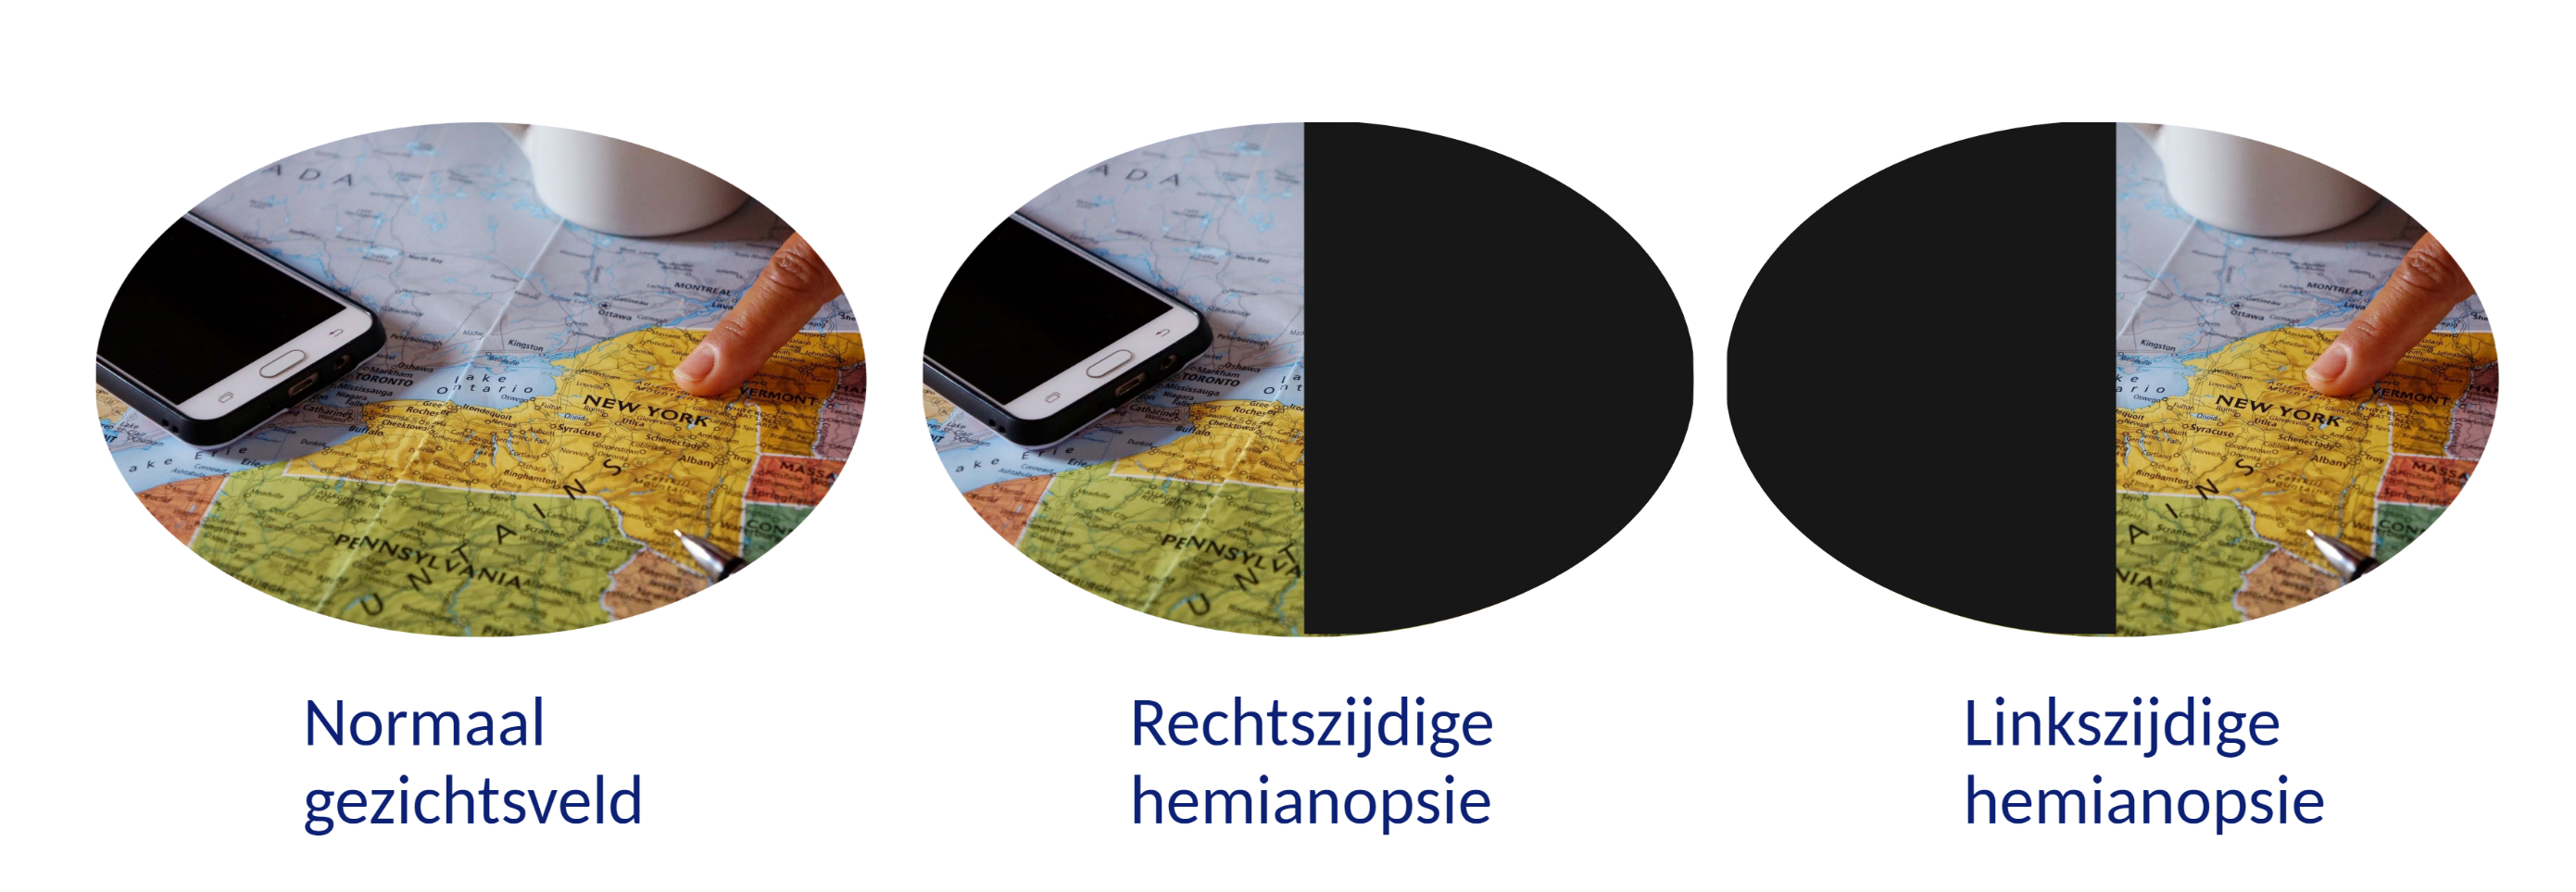 Gezichtsveld normaal (volledig beeld) - gezichtsveld rechtszijdige hemianopsie (rechts zwarts) - gezichtsveld linkszijdige hemianopsie (links zwart)